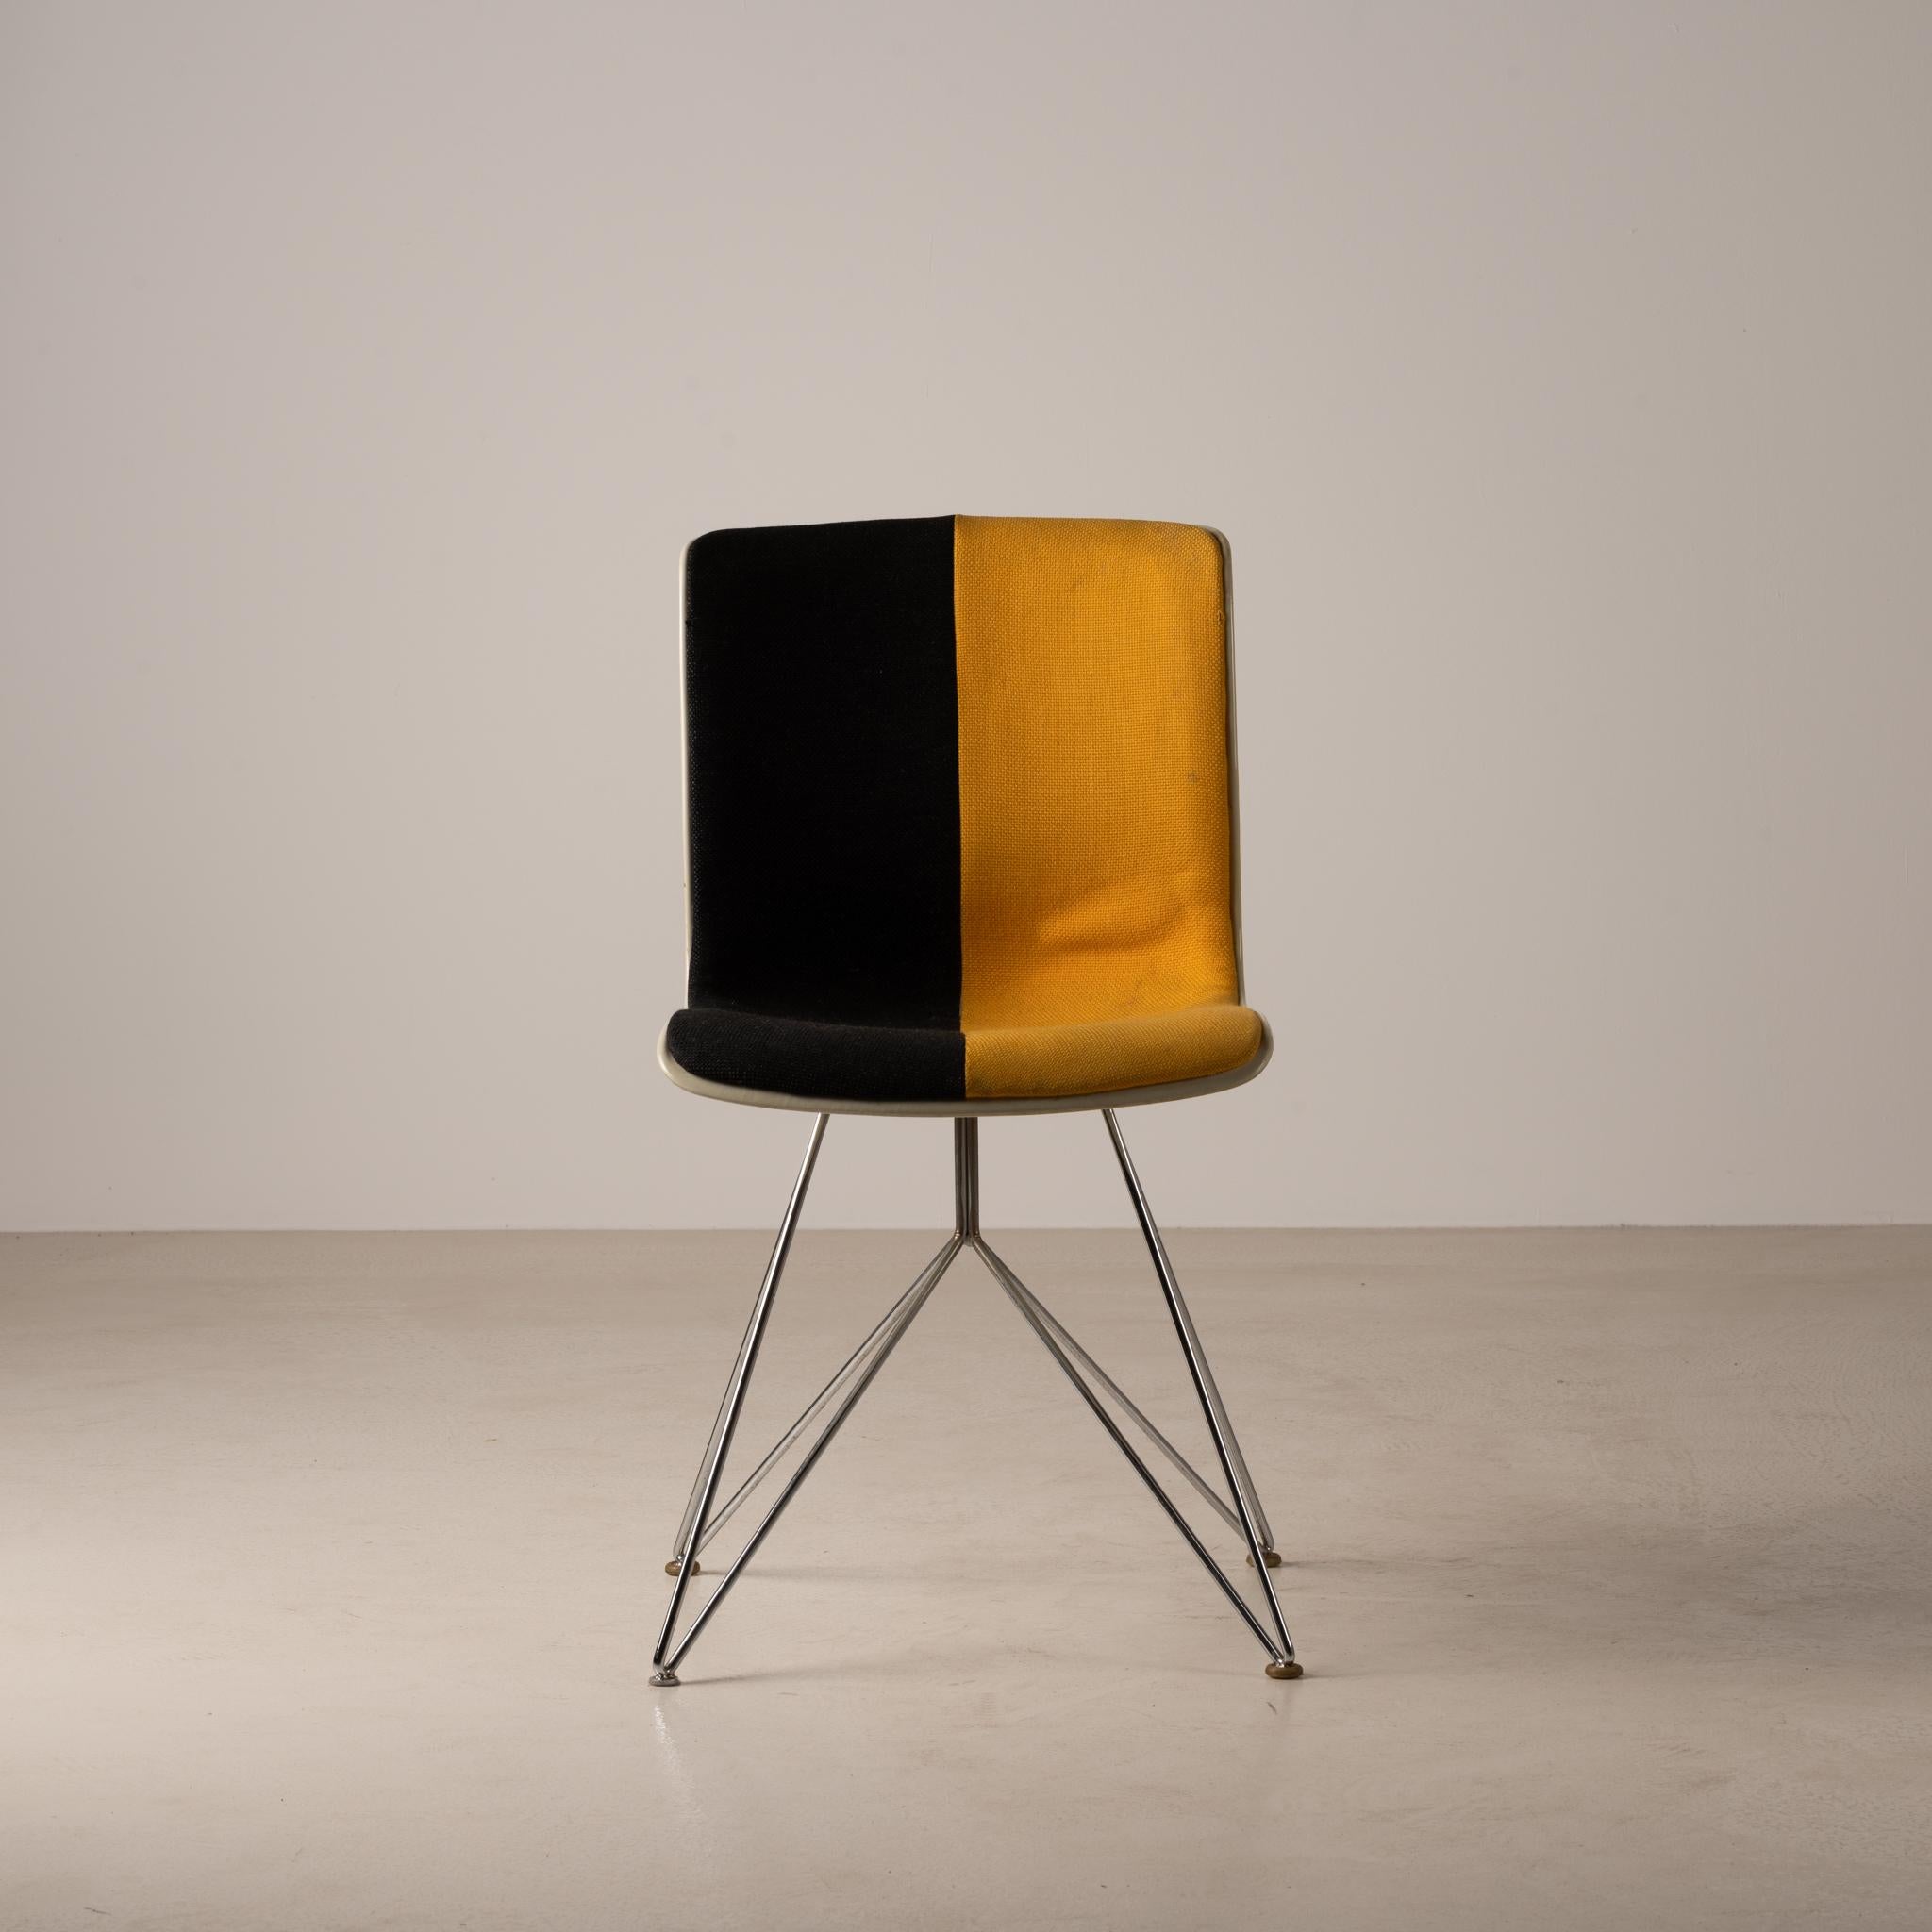 Conçue en 1969 par Sori Yanagi, la chaise Kobotuki est dotée d'une confortable assise en coque FRP, de pieds en acier plaqué et d'un revêtement original noir et jaune.

Dans les années 1960, cette chaise était utilisée dans les bâtiments publics